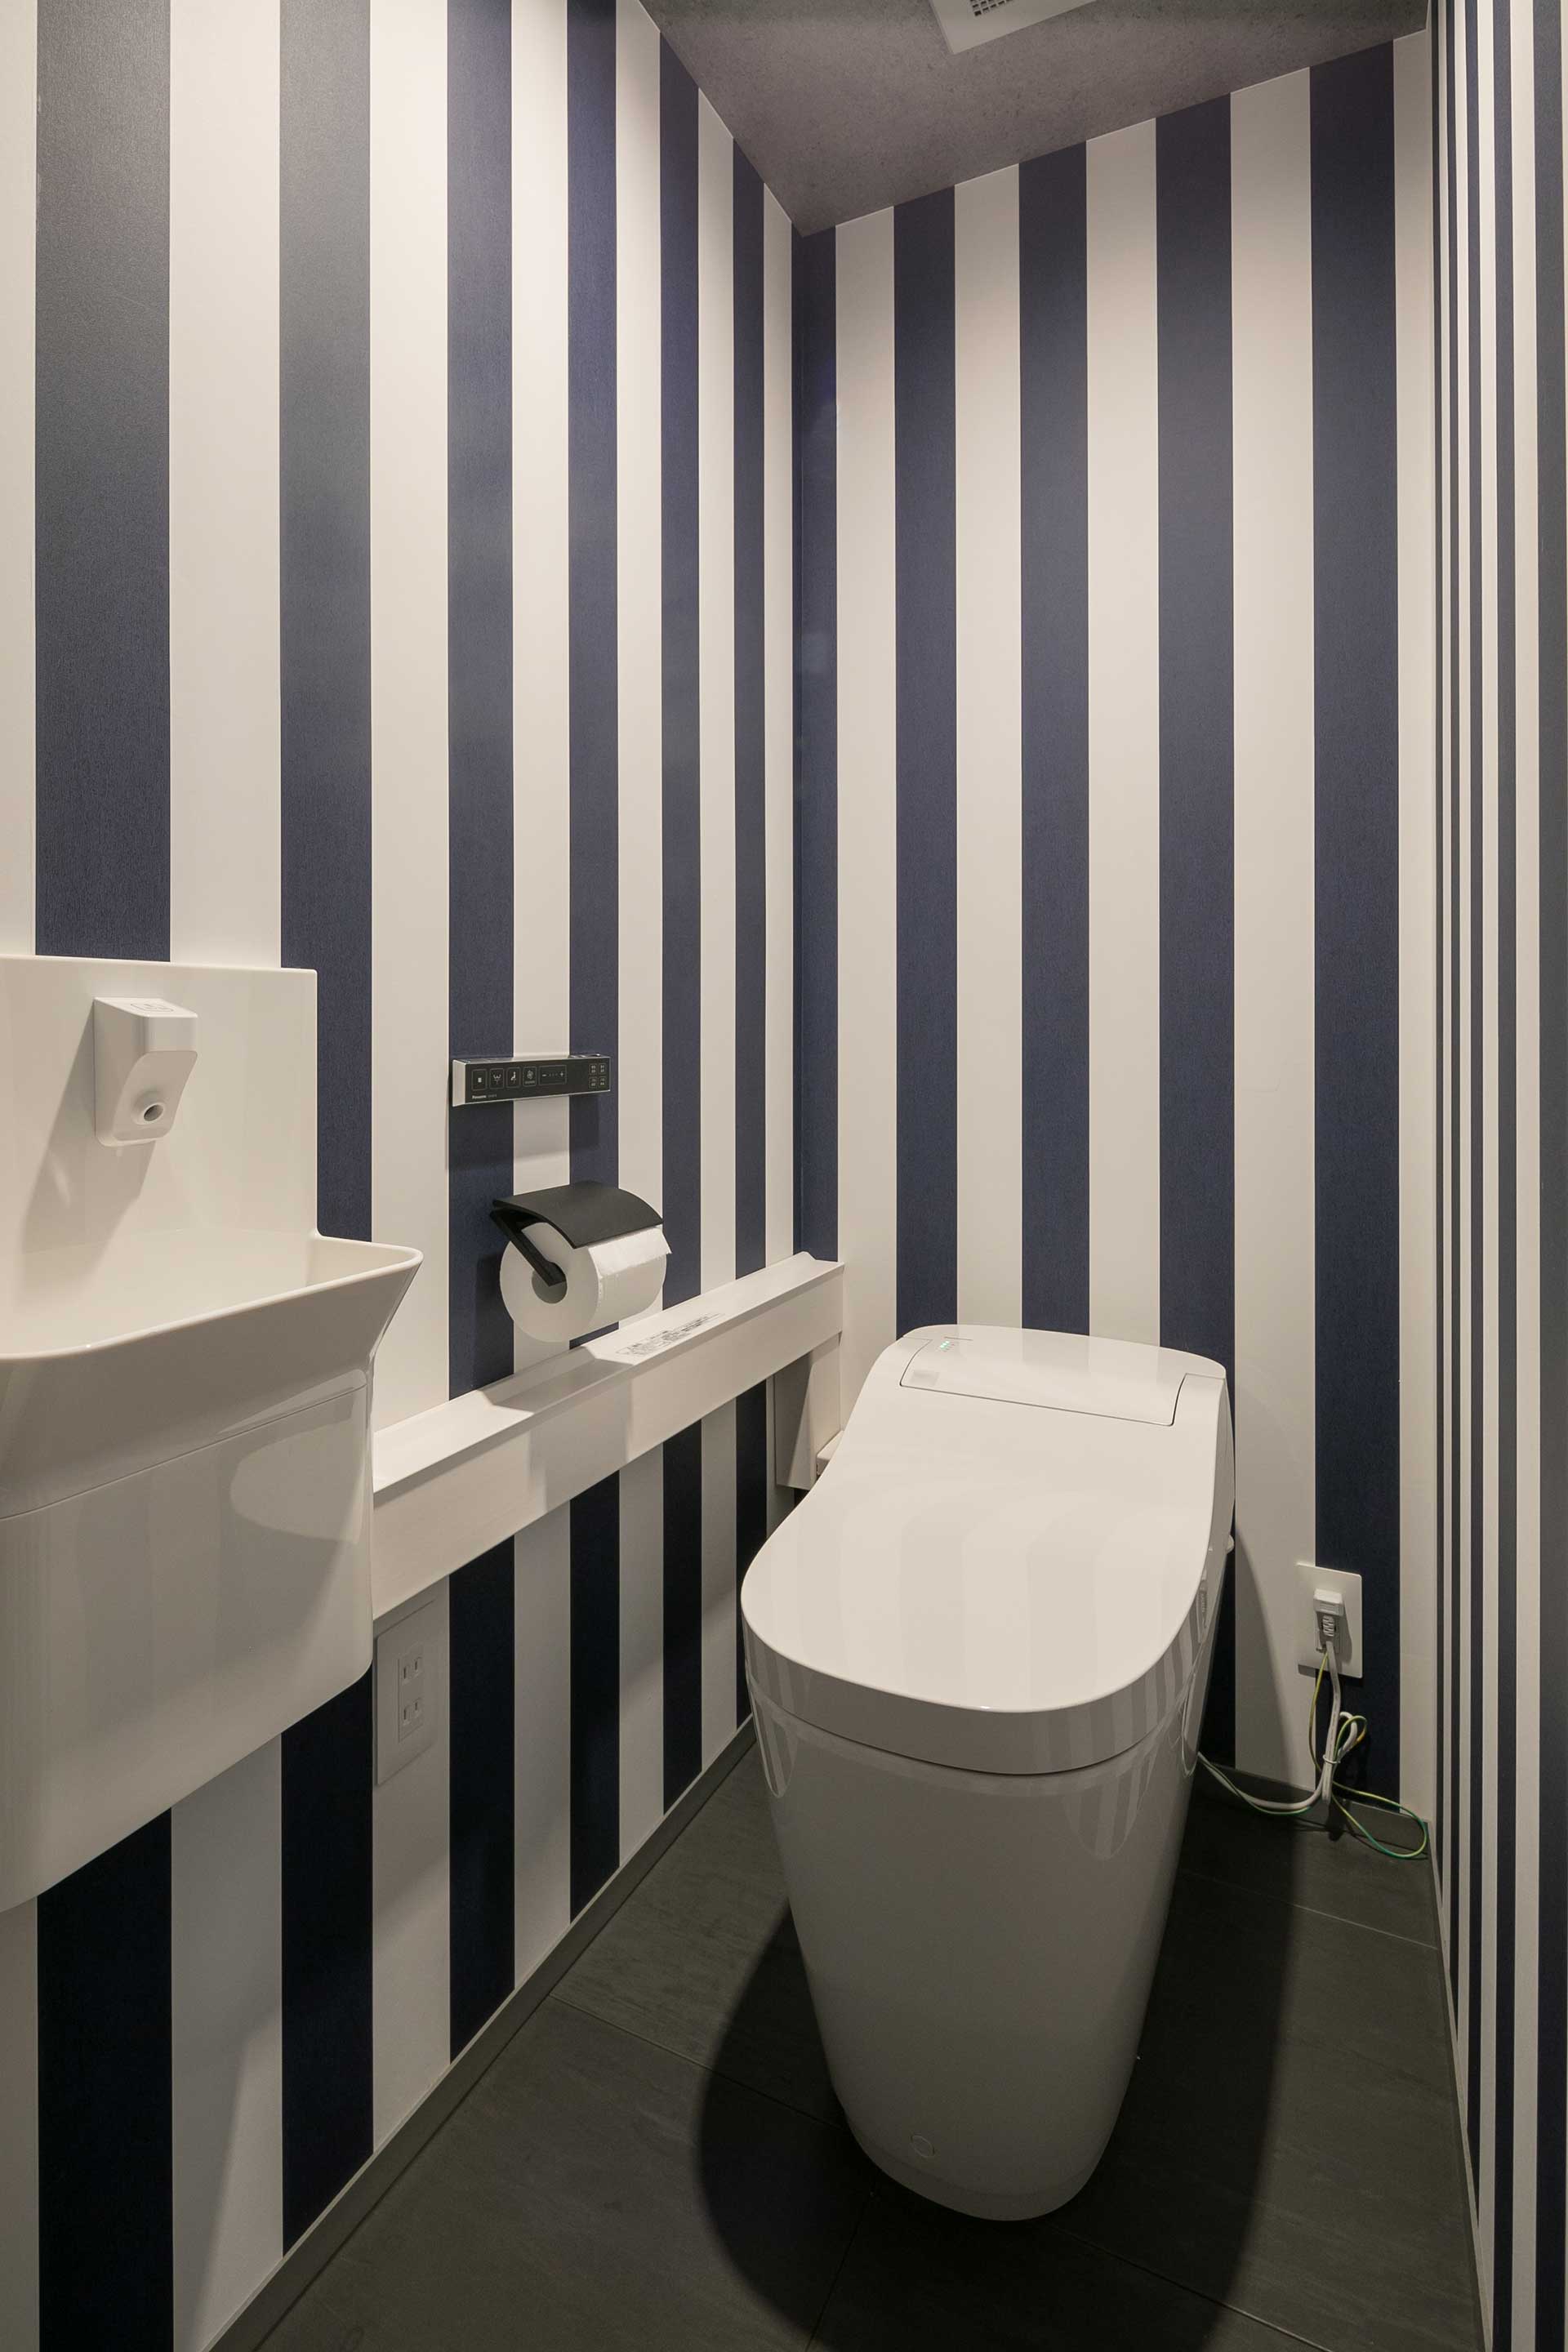 縦方向に広がりを感じさせるストライプ柄の壁紙が印象的なトイレ。